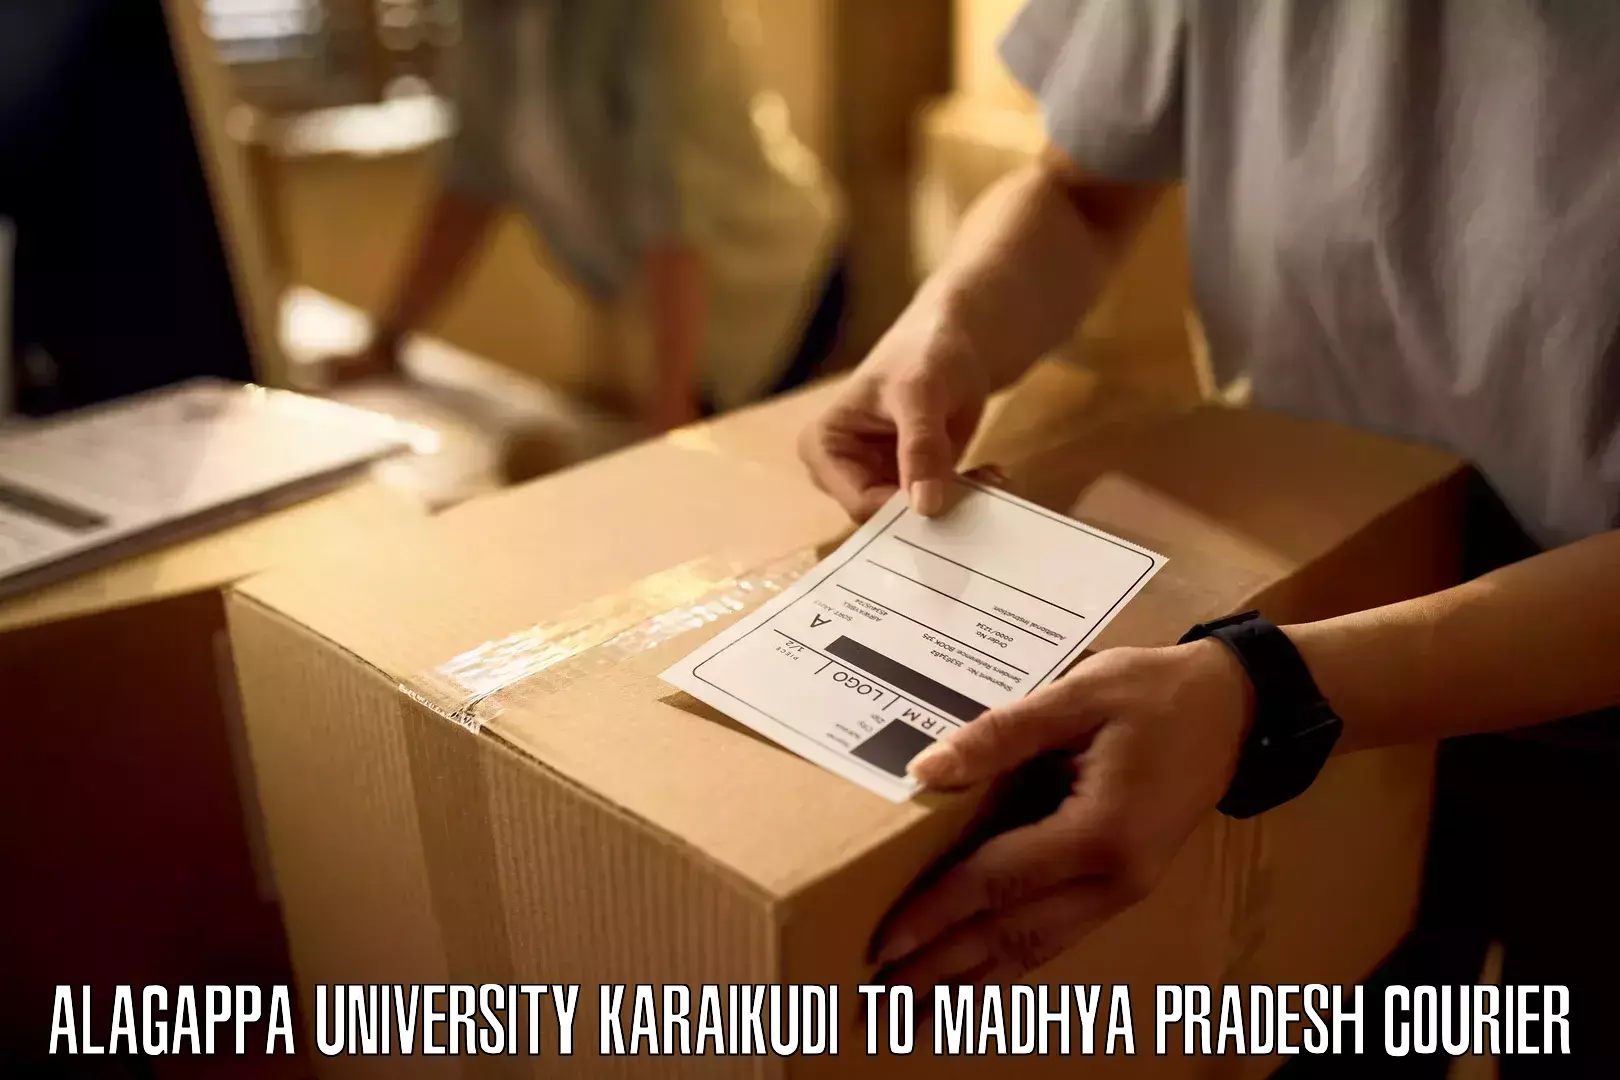 Overnight delivery services Alagappa University Karaikudi to Khirkiya